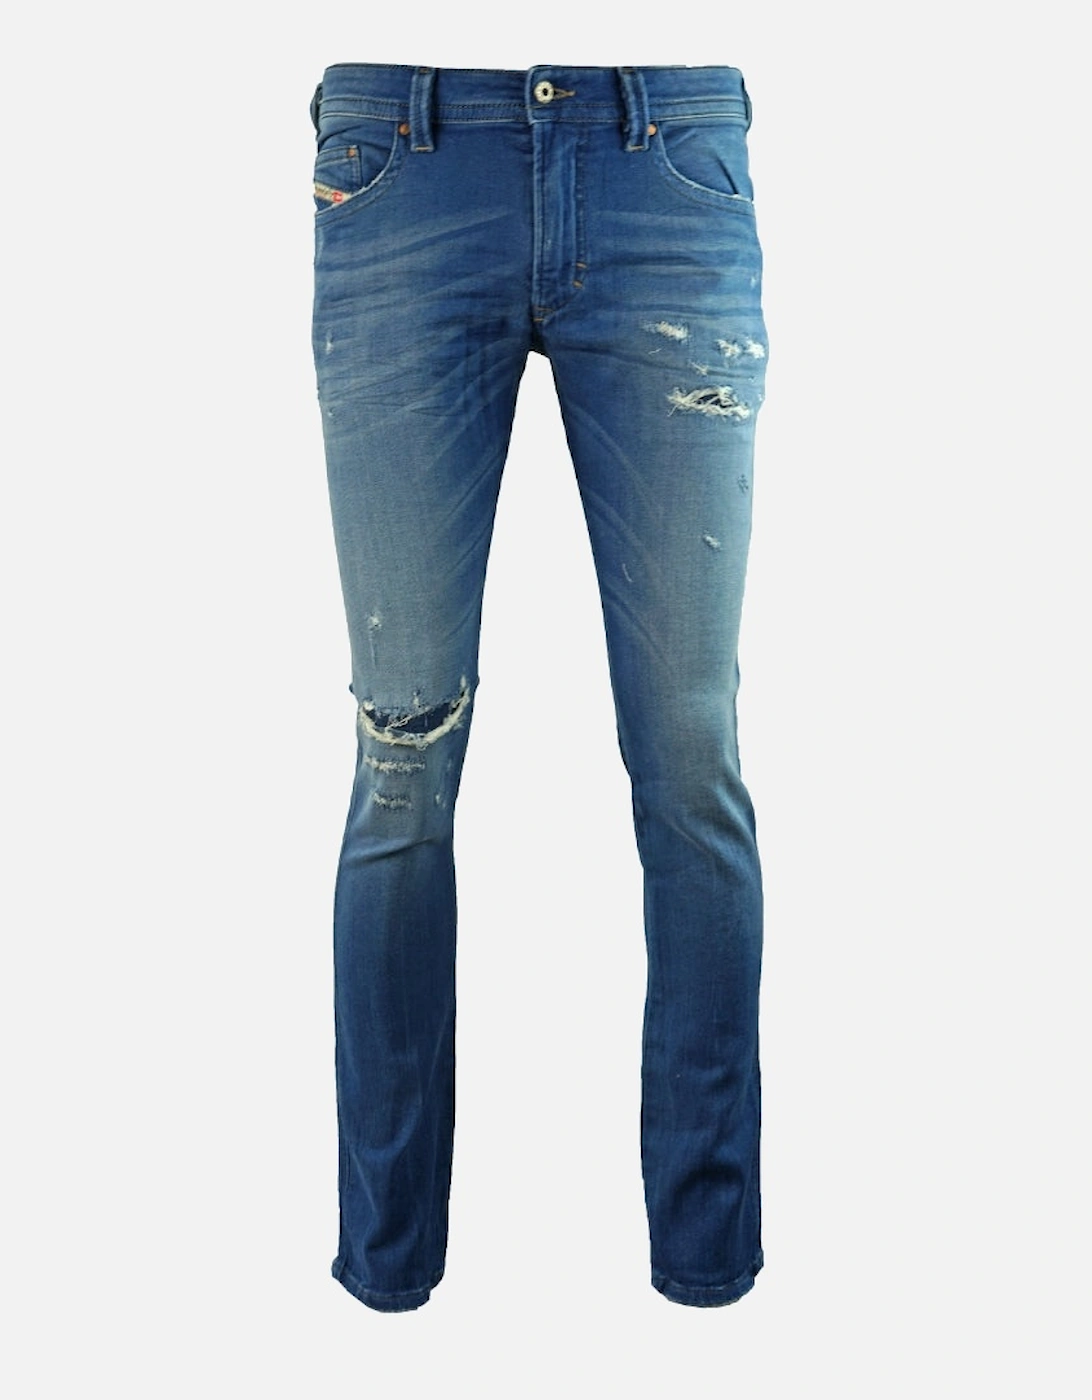 Thavar-NE 0R73T8 Jeans, 5 of 4